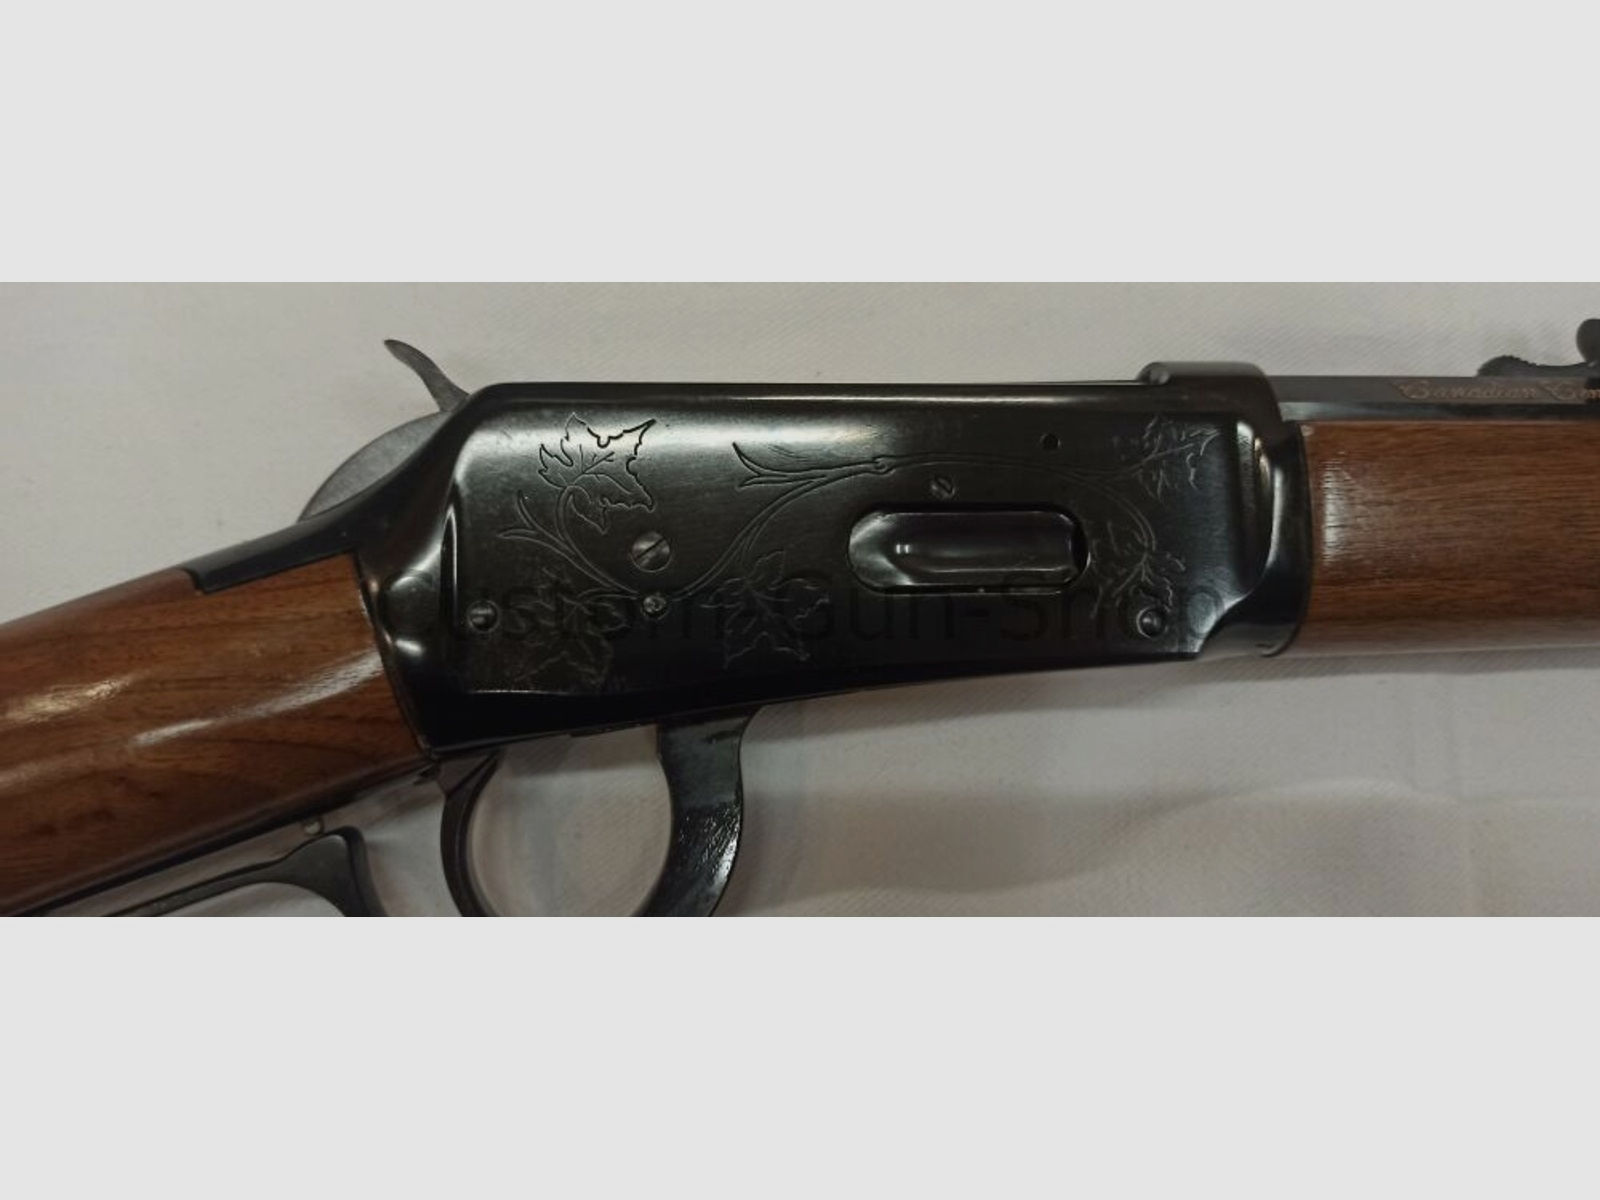 Winchester	 Model 94 Canadian Centennial 1867-1967